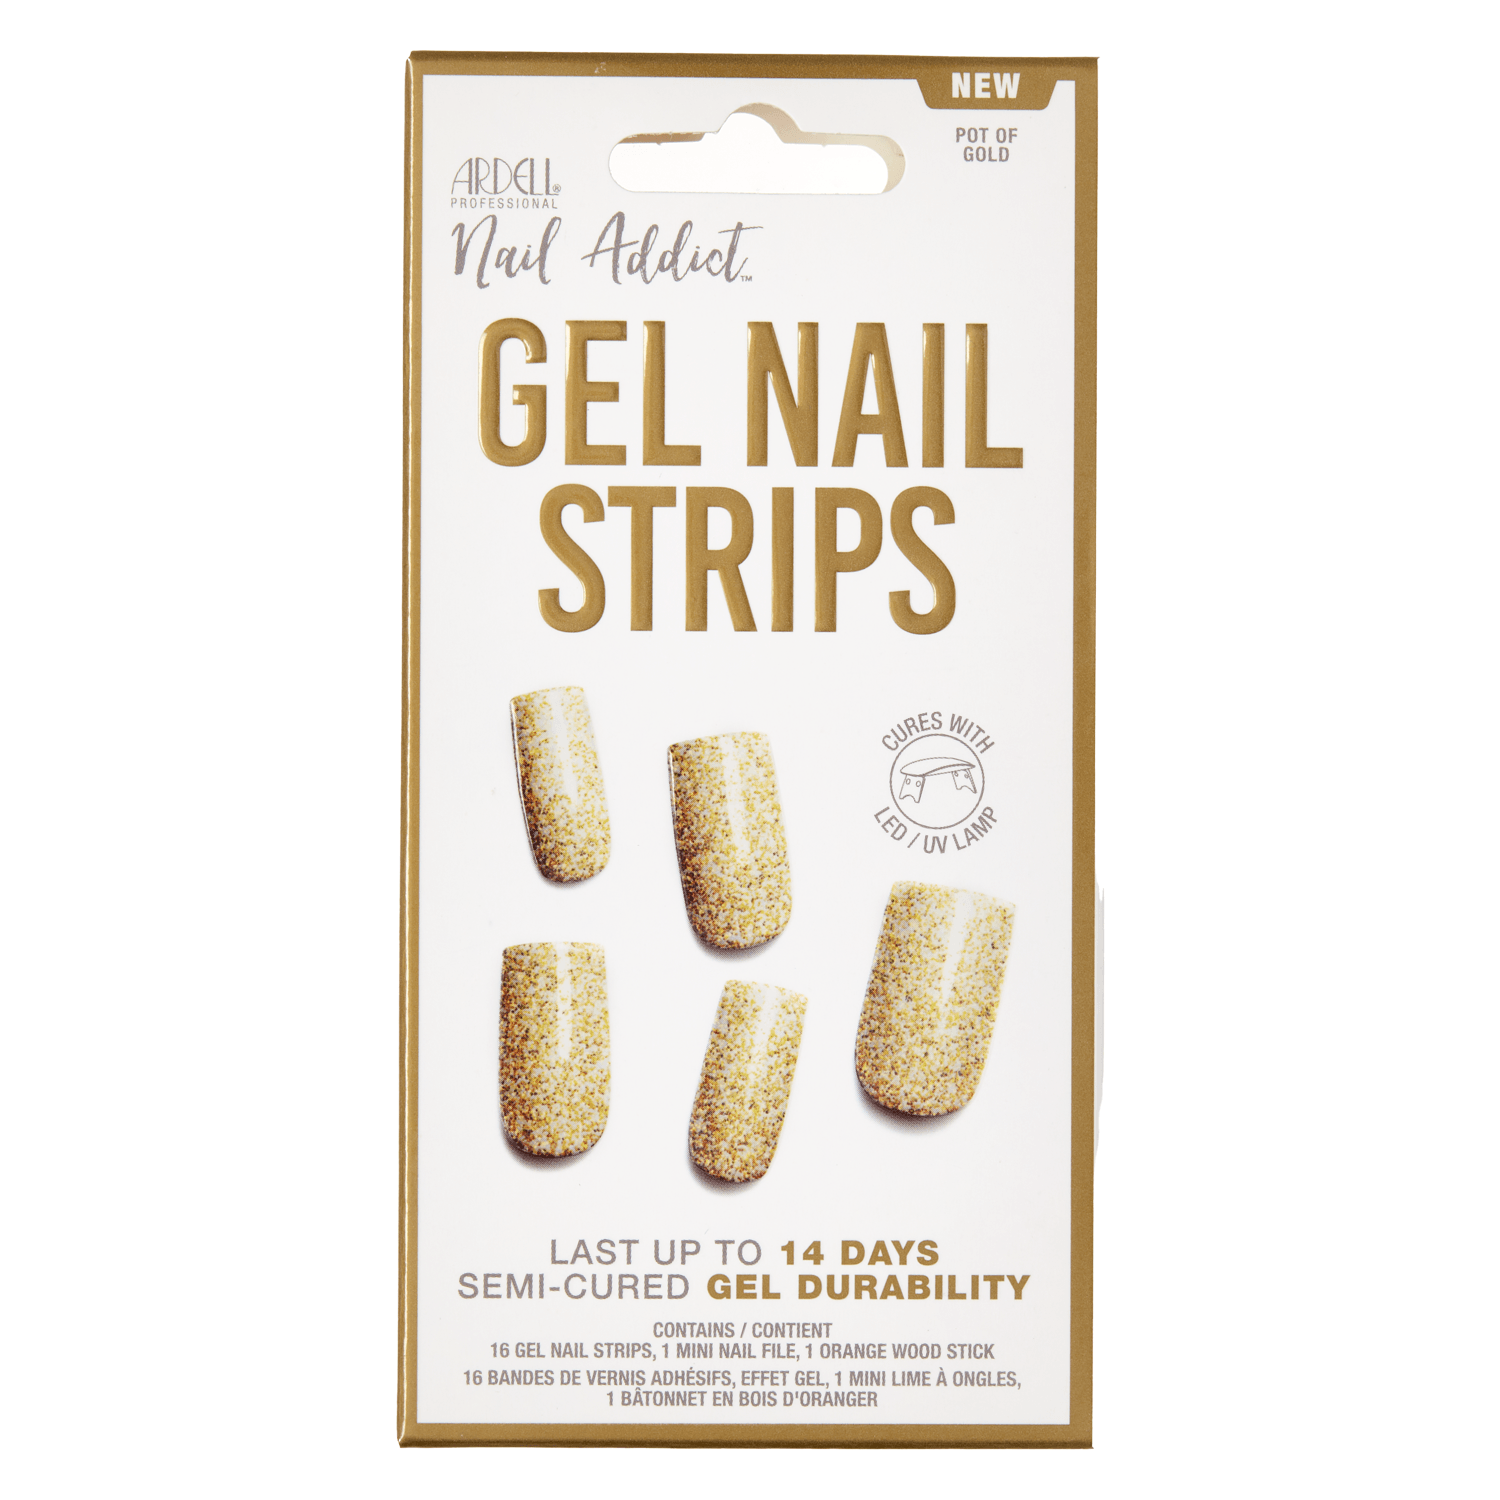 Produktbild von Nail Addict - Gel Nail Strips Pot Of Gold